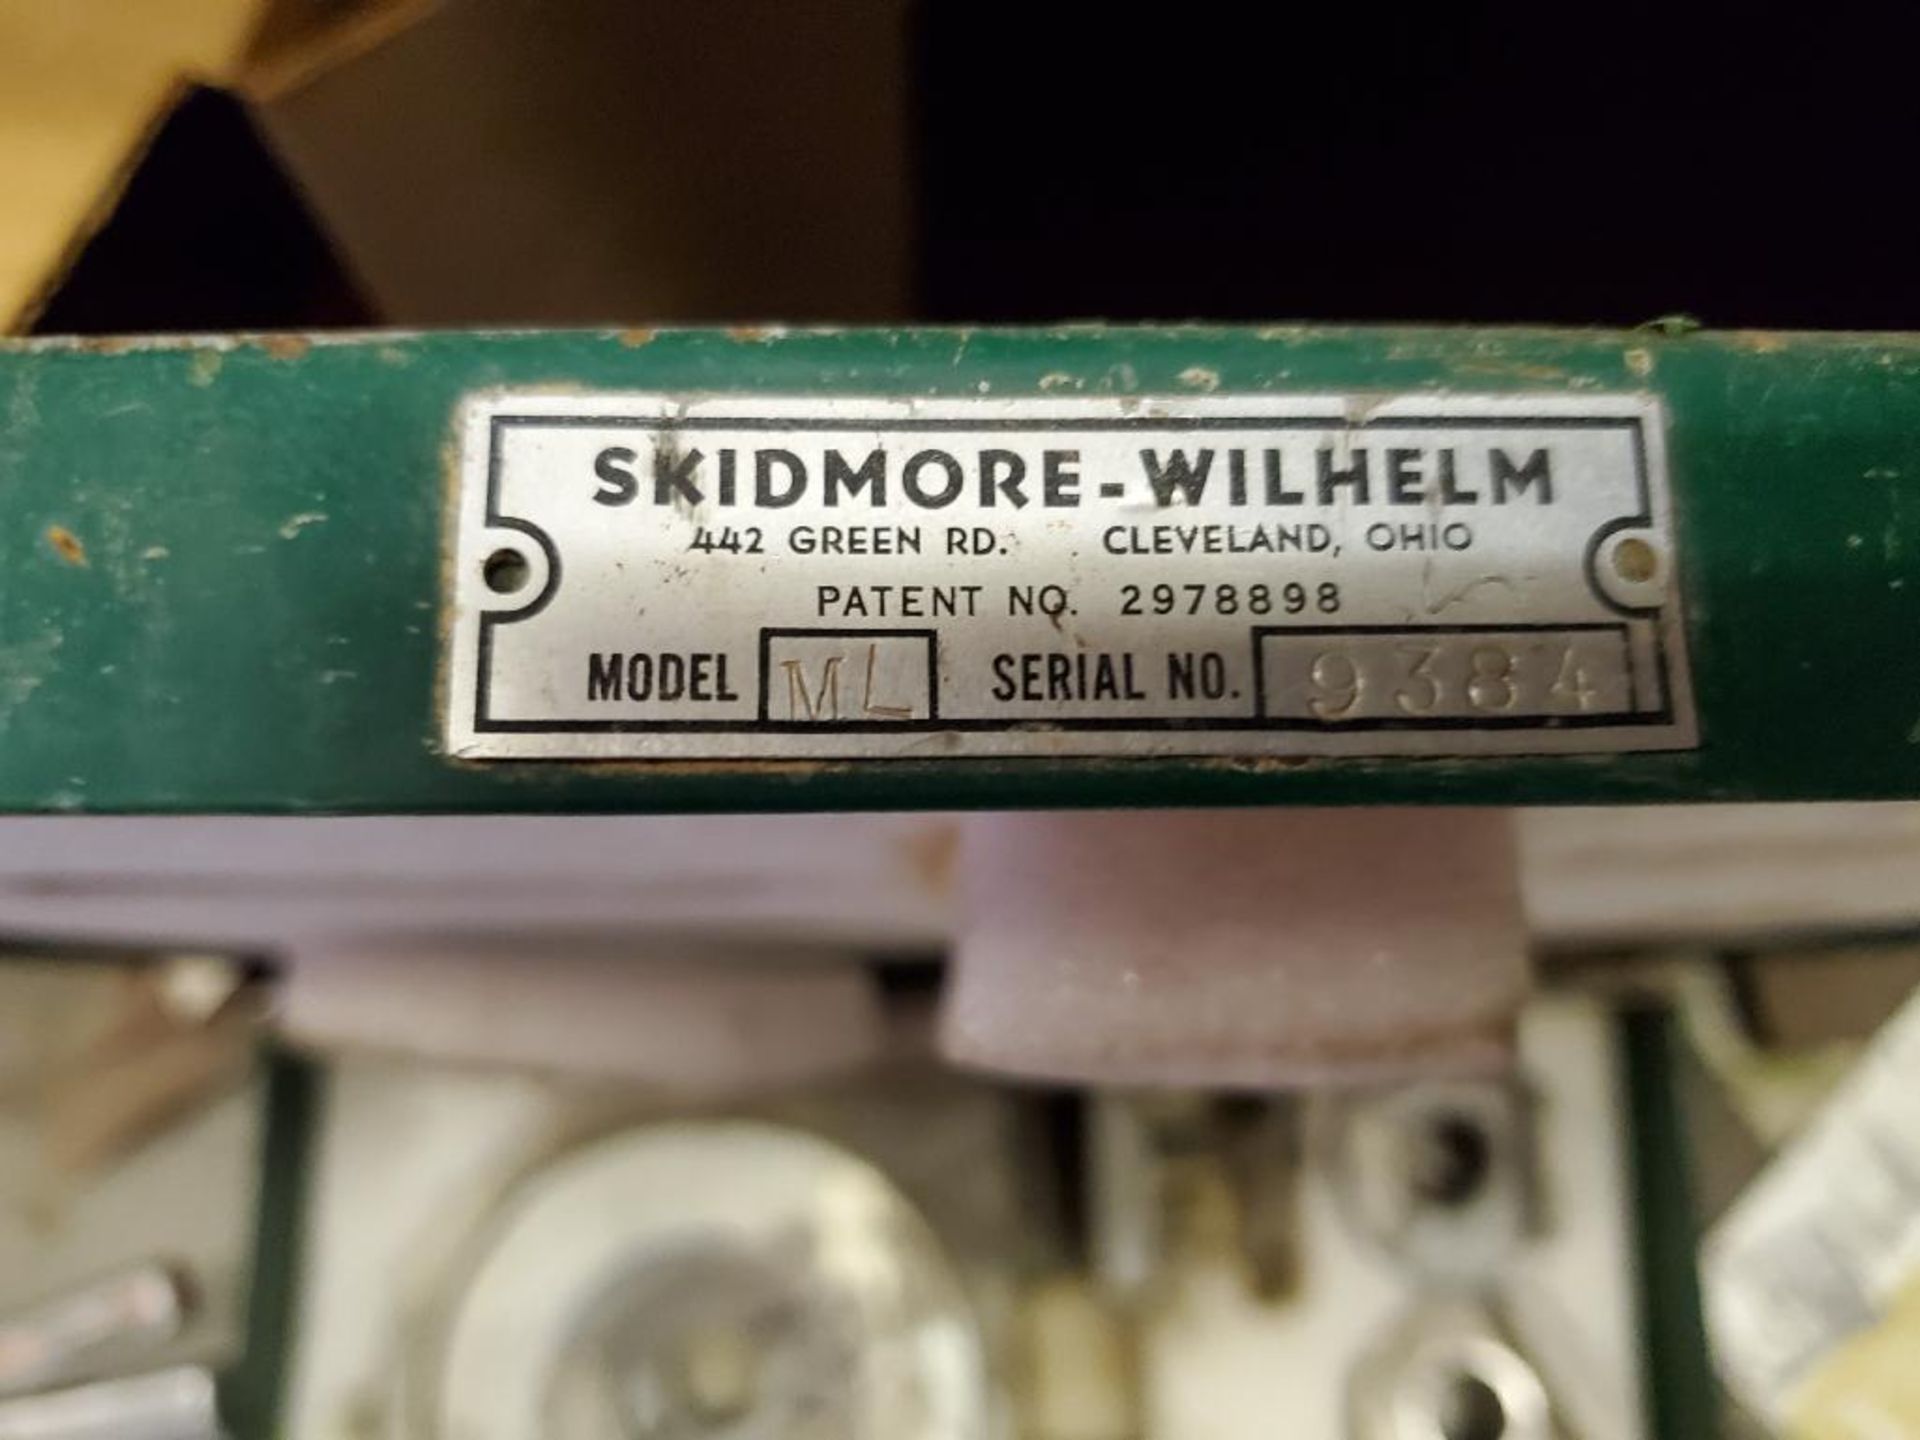 Skidmore-Wilhelm Bolt Tension Caliper, Model ML - Image 3 of 3